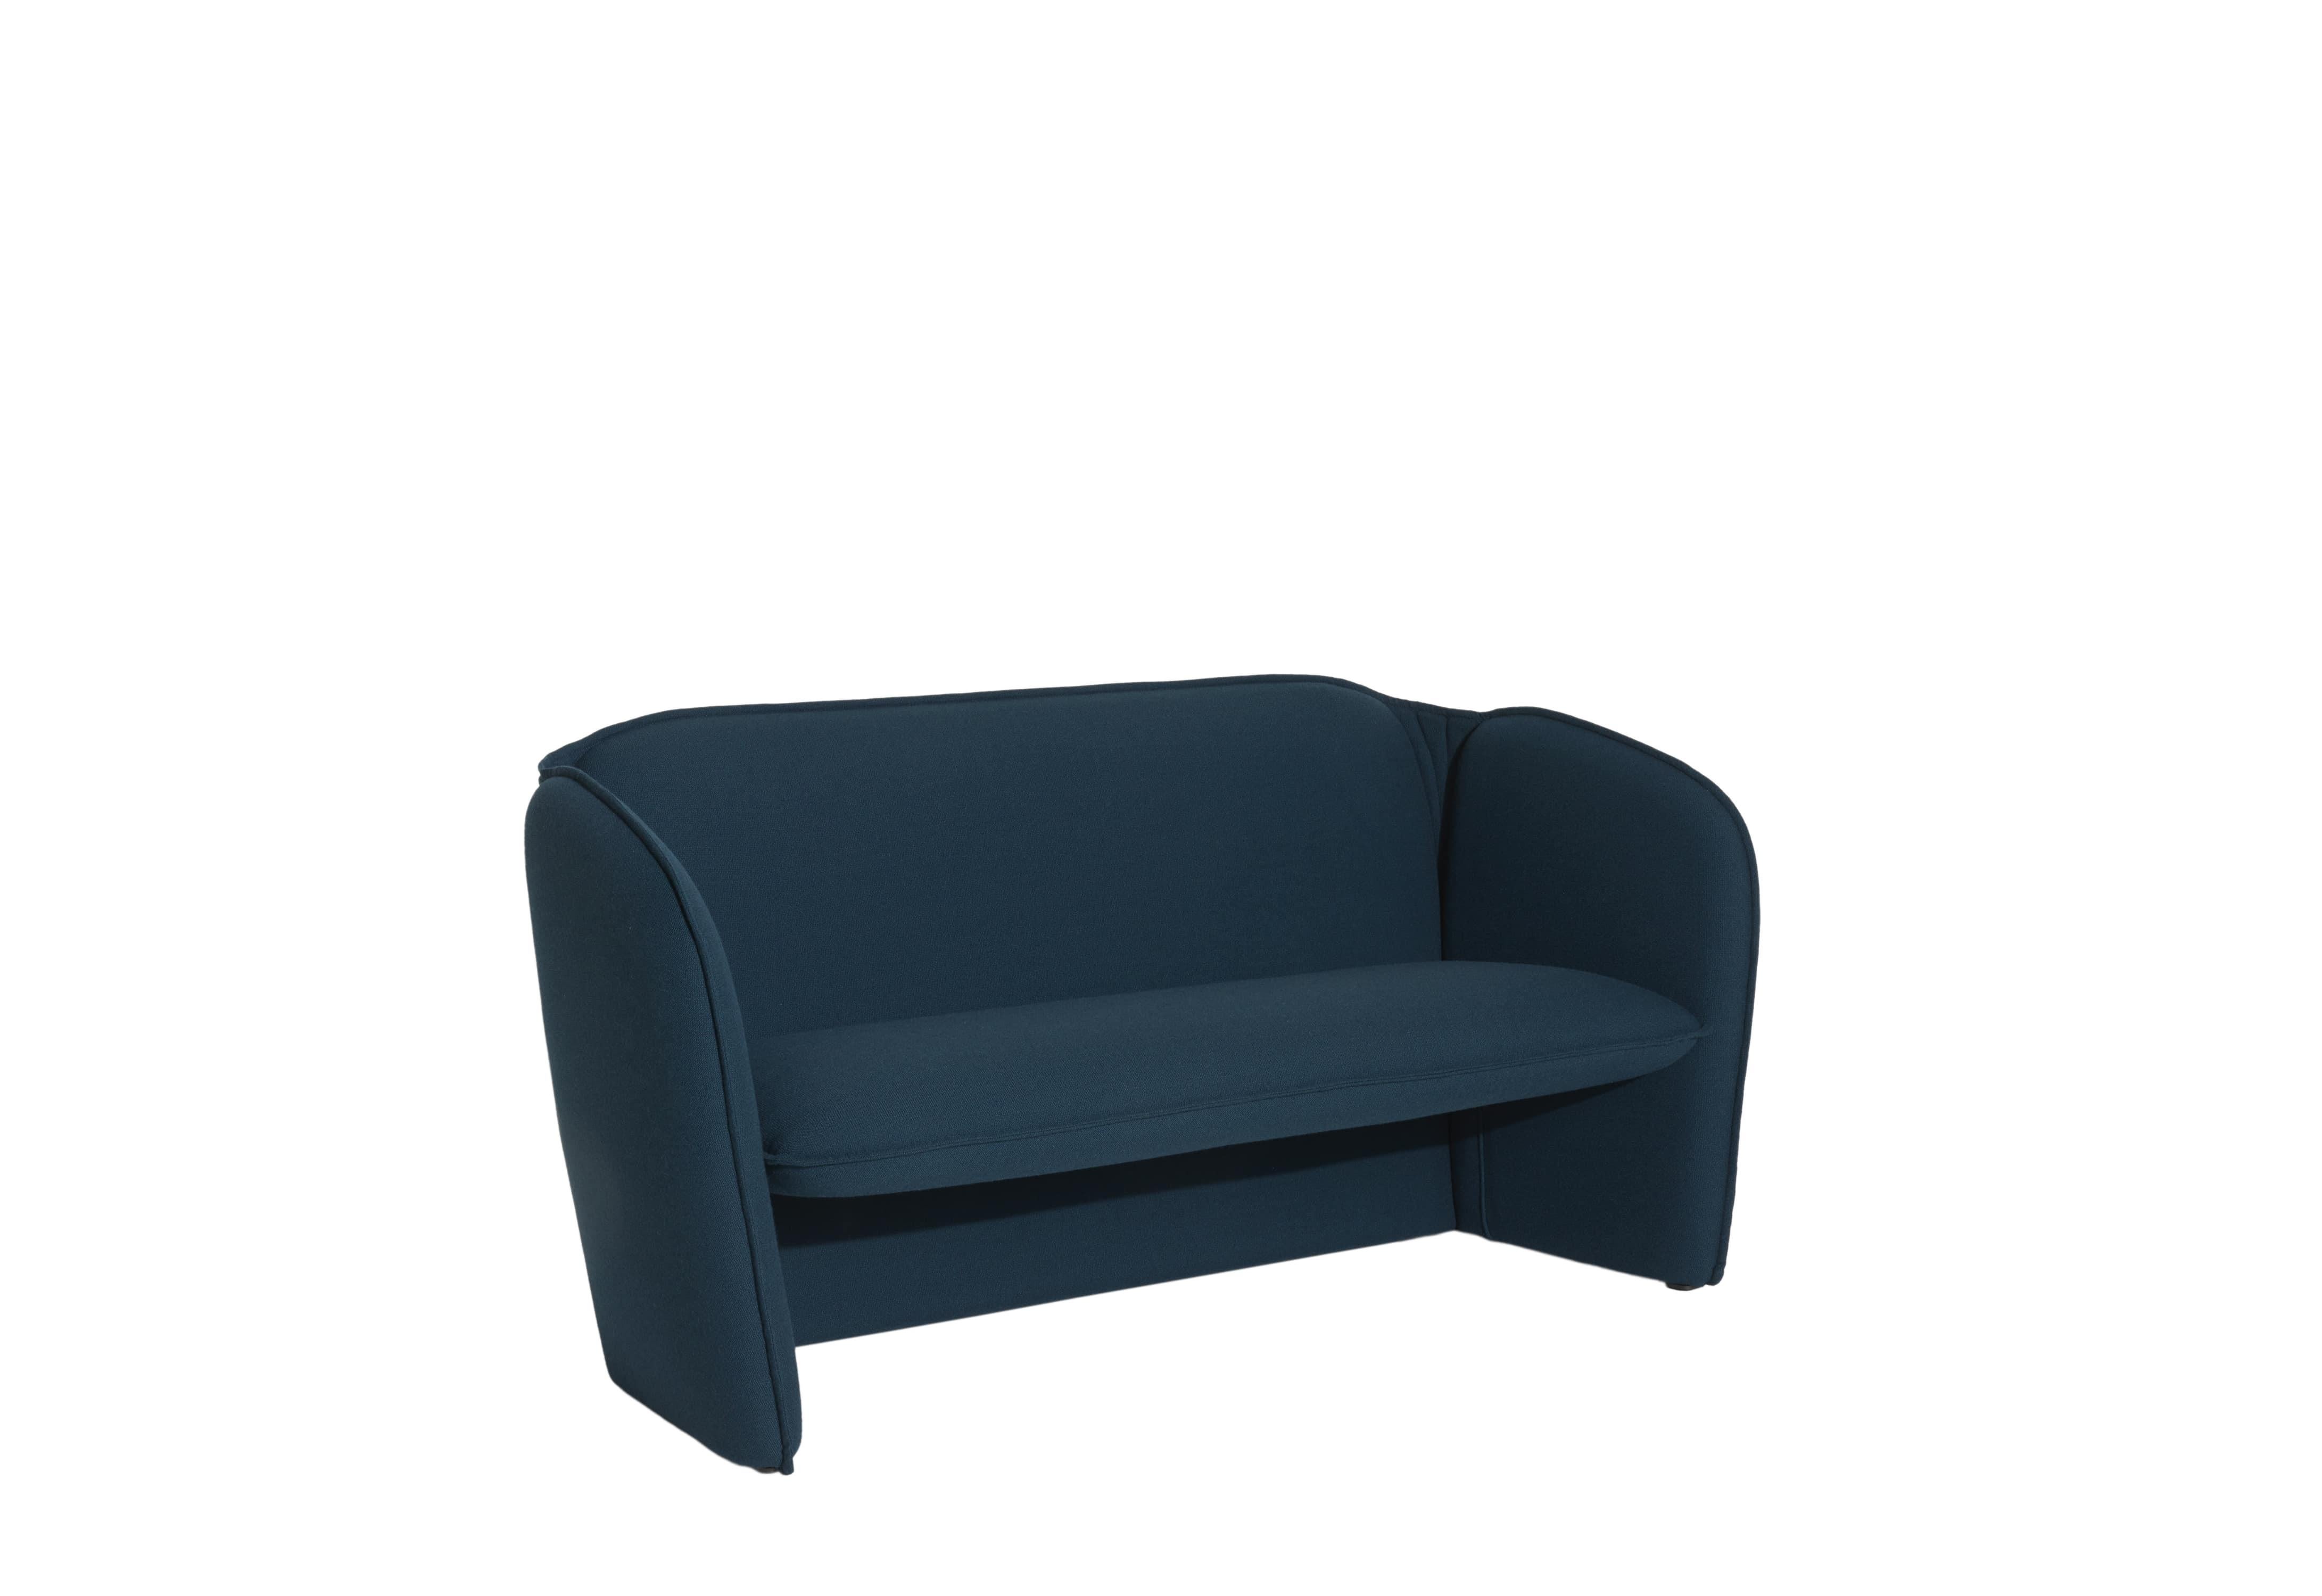 Petite Friture Lily Sofa in Marineblau von Färg & Blanche, 2022

Eine umfassende Kollektion, bestehend aus einem Sofa und einem Sessel. Mit tadellosen, prägnanten Proportionen und glatten, organischen Konturen, die ein gastfreundliches Gefühl